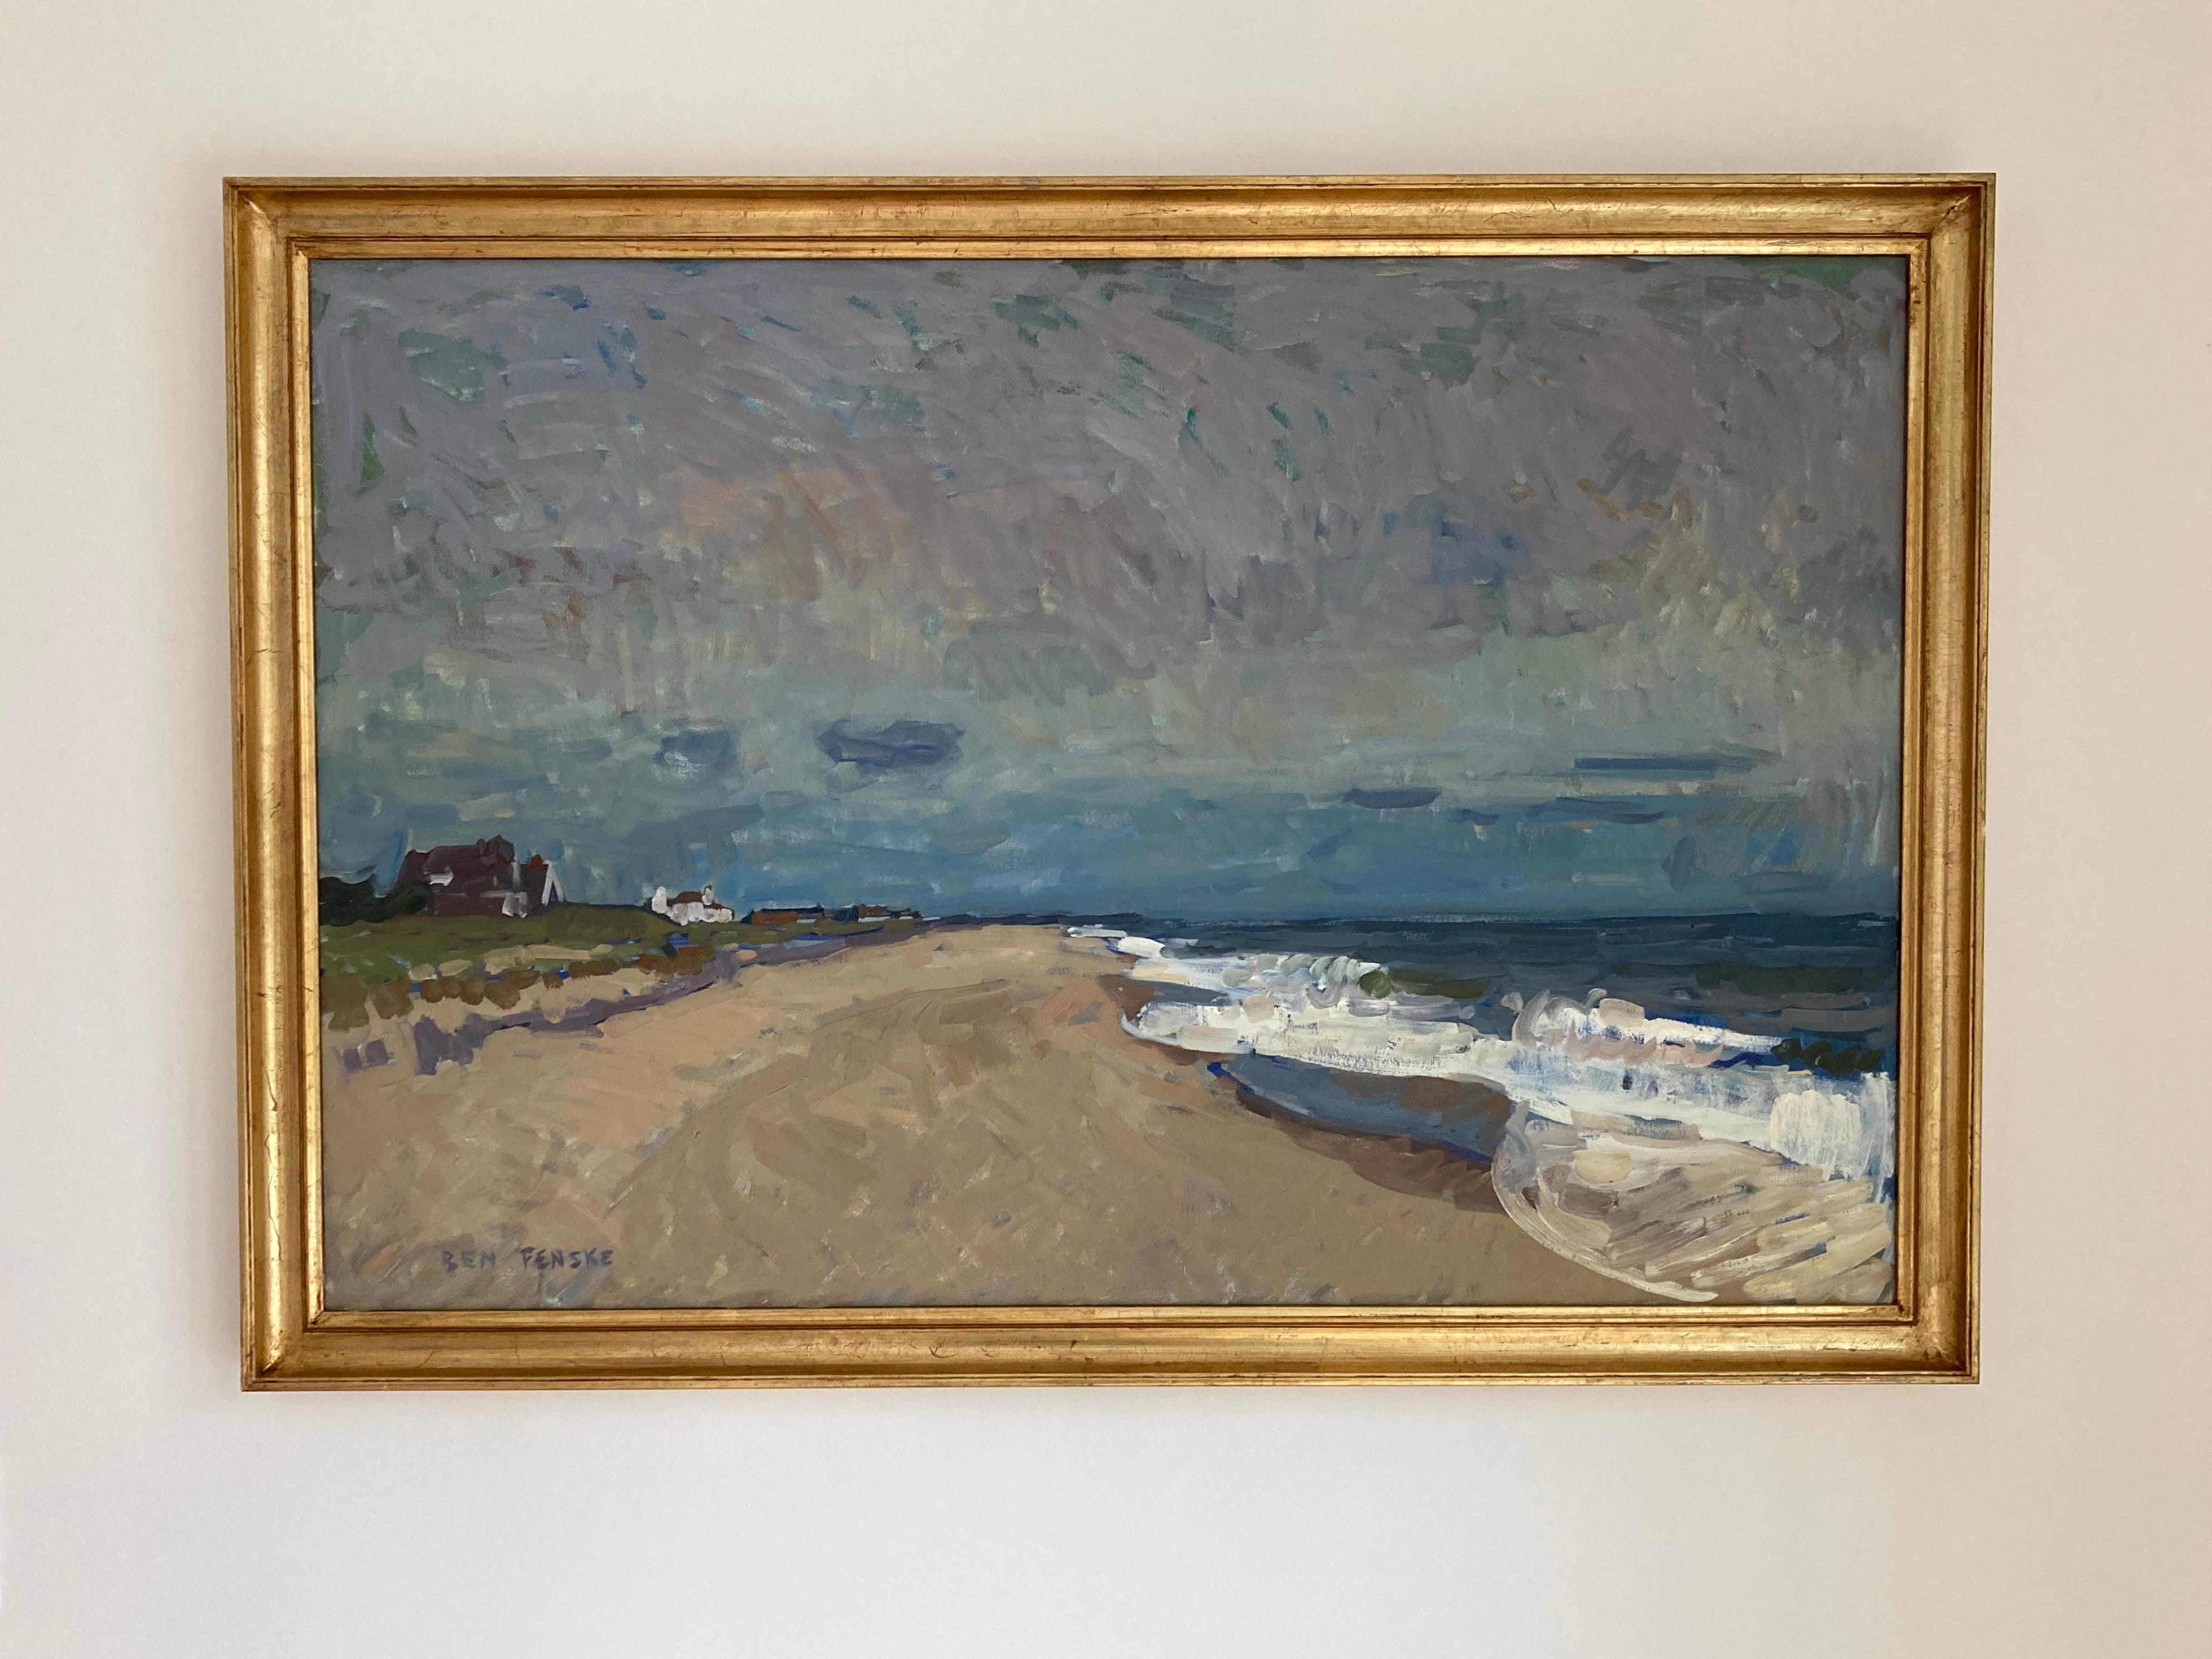 « Peter's Pond, septembre », vue impressionniste de la plage de Sagaponack en plein air - Impressionnisme Painting par Ben Fenske